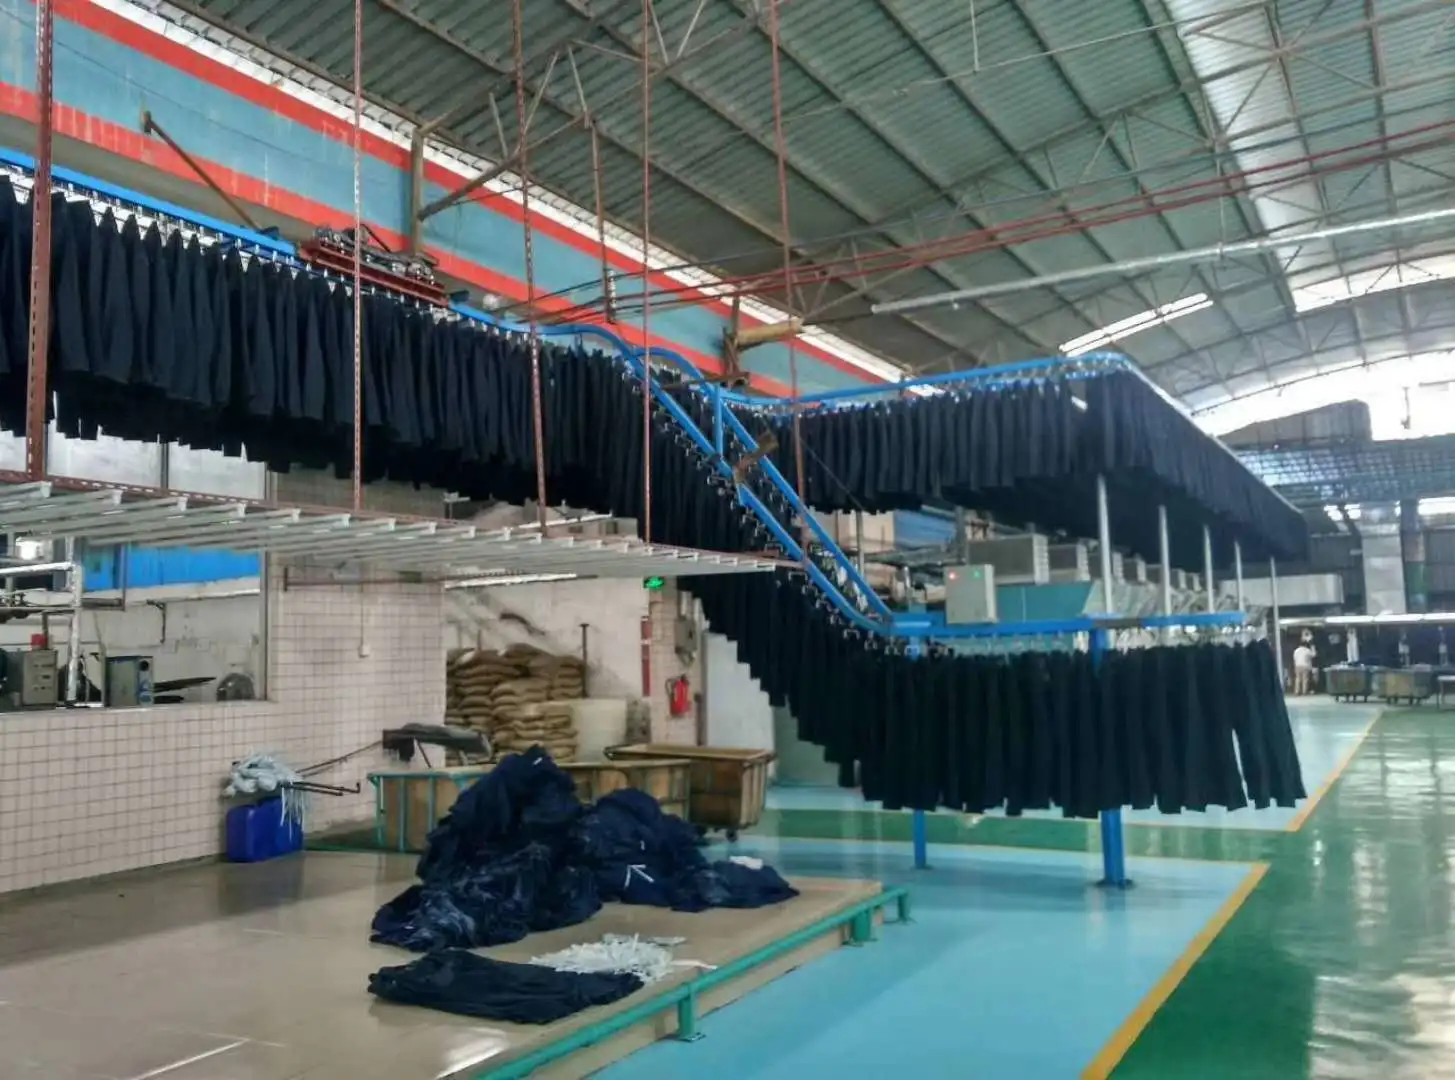 Overhead Conveyor System For Garment,Laundry,Clothes - Buy Conveyor ...